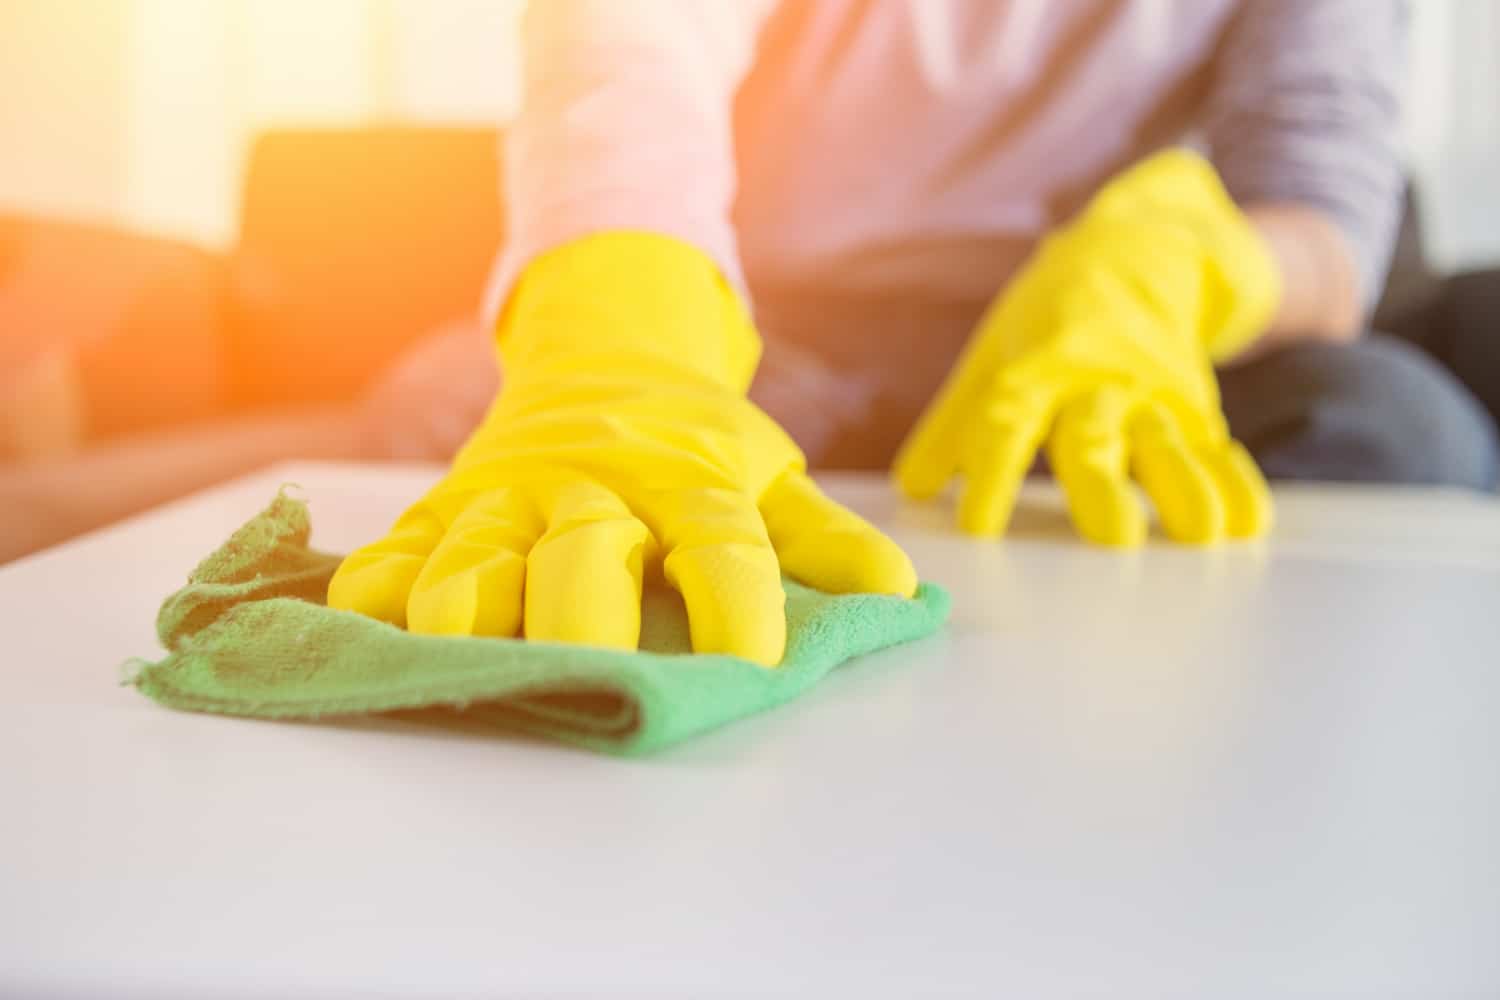 Pessoa com luvas amarelas higieniza uma superfície branca com o auxílio de um tecido verde. Ilustração do texto sobre limpeza profissional na Paralela.